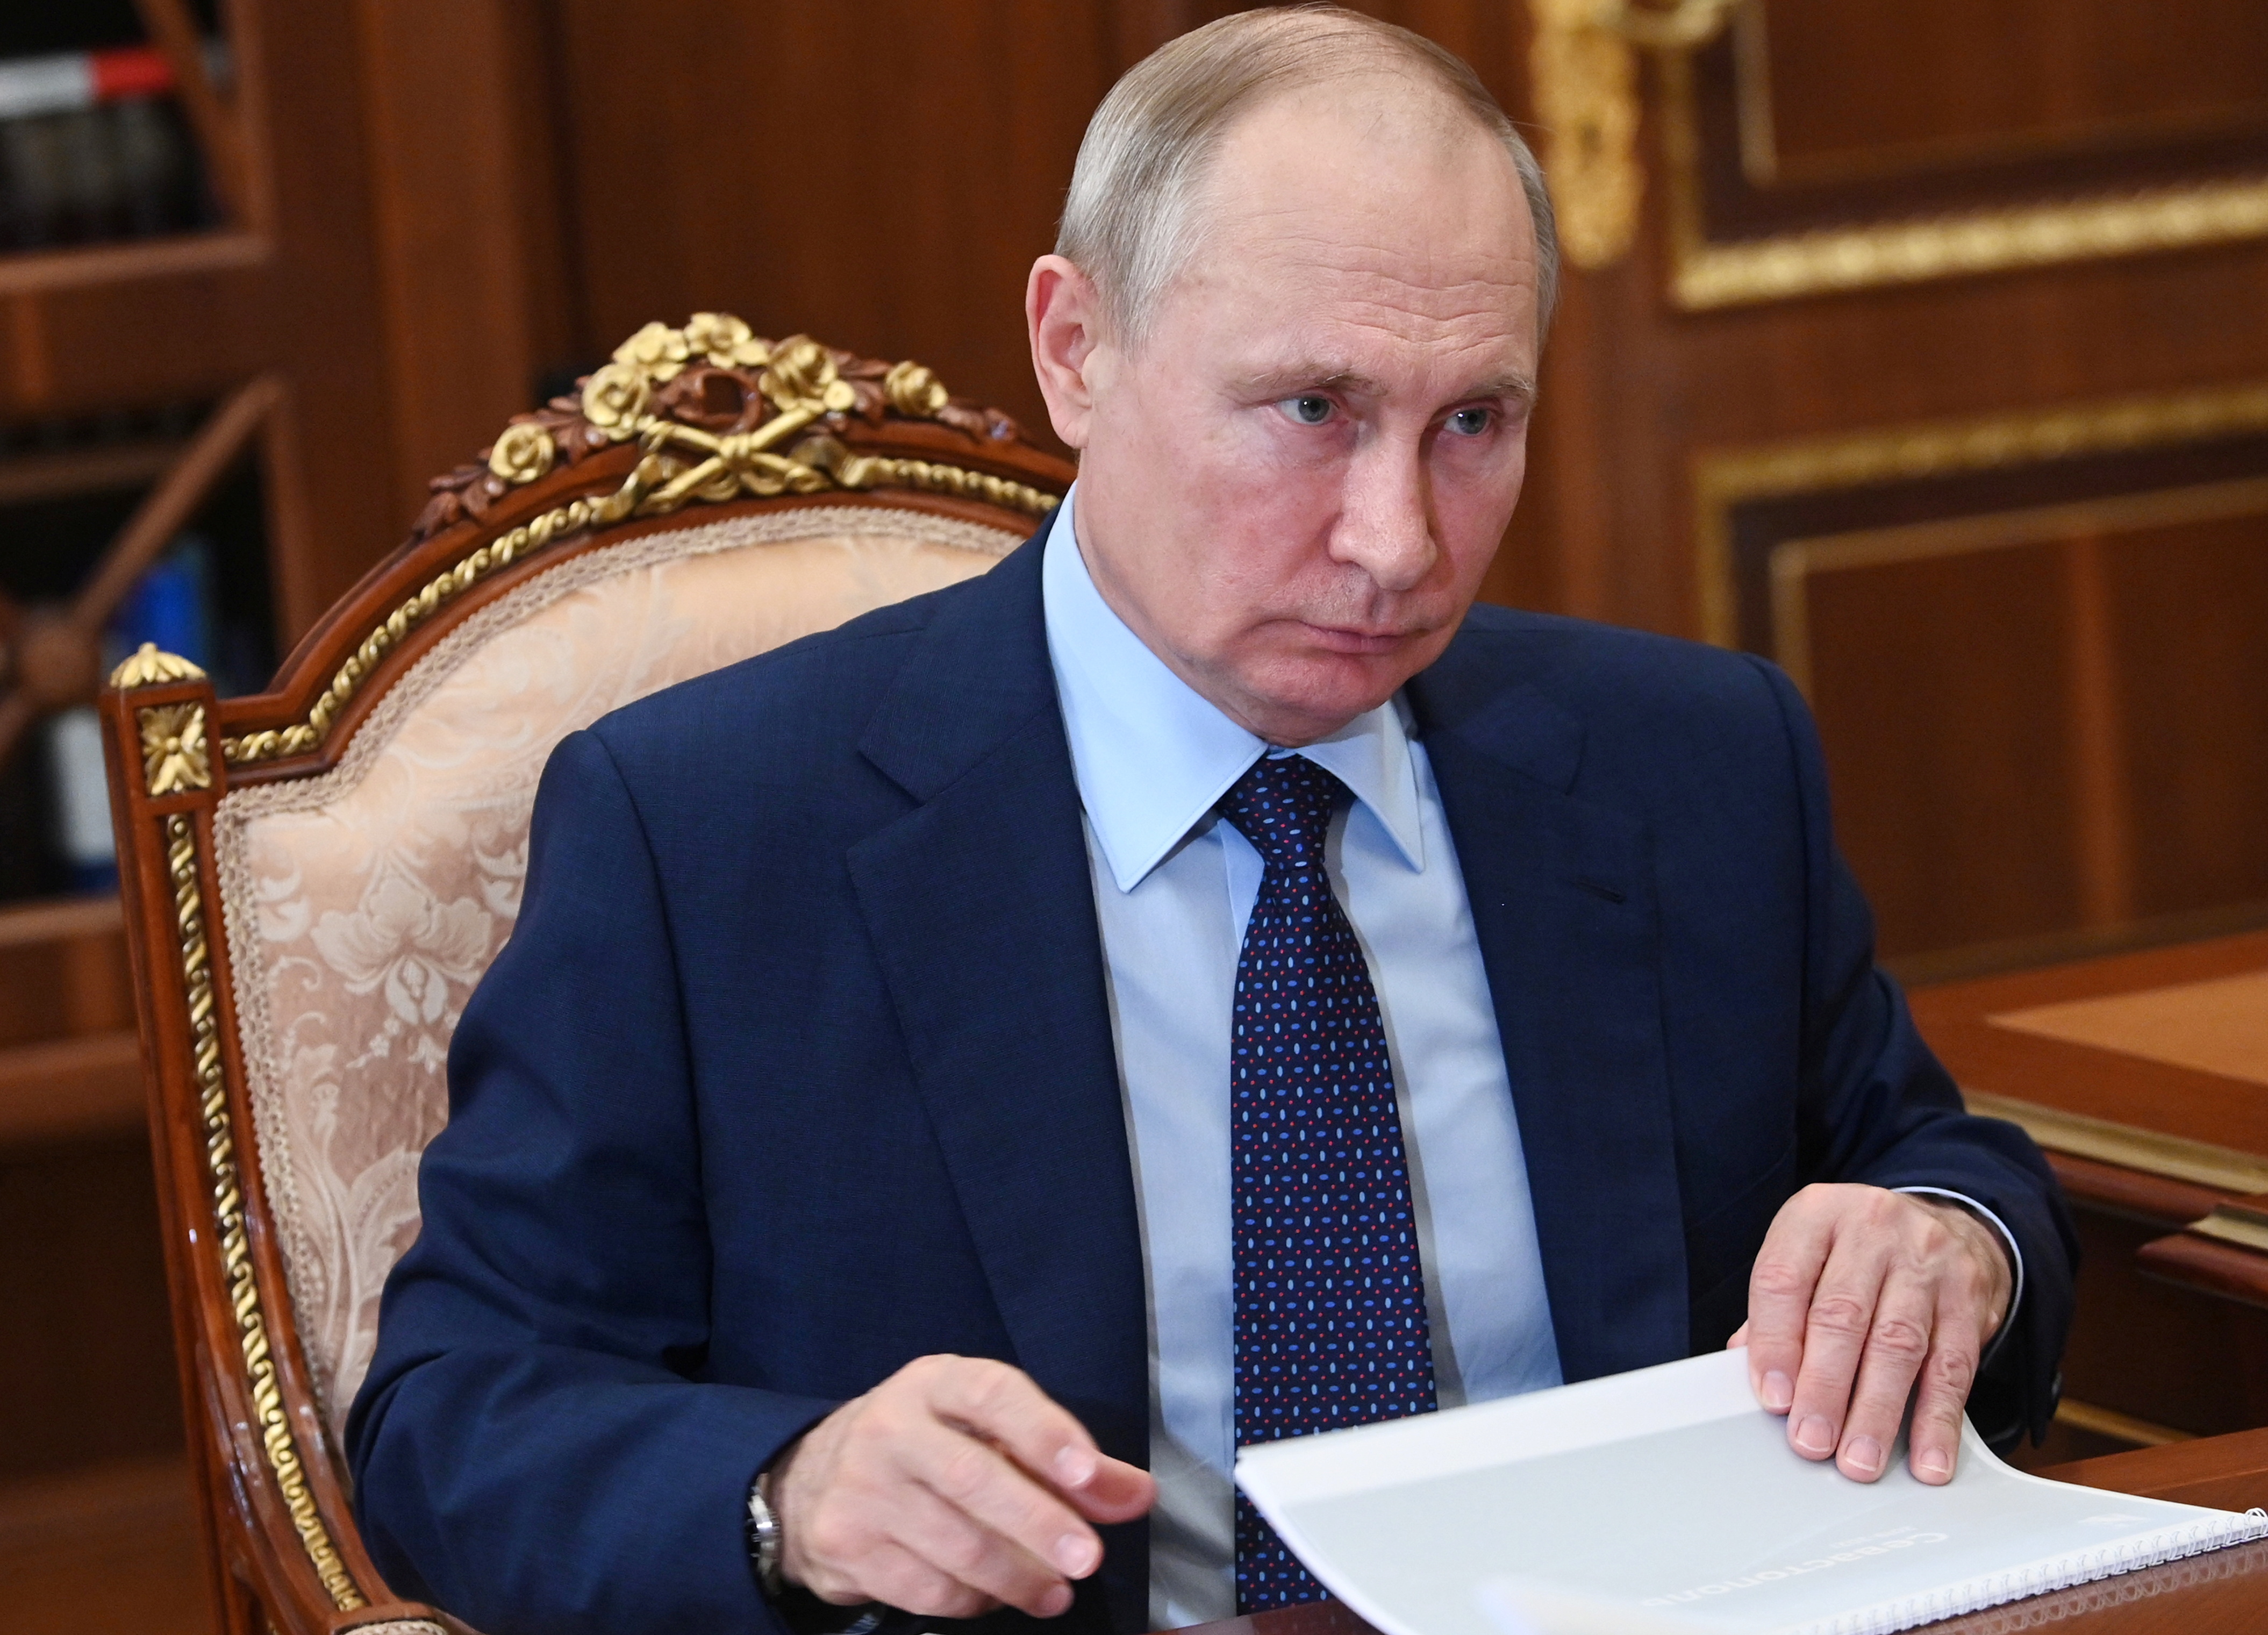 El Kremlin se pronunció a favor de la libertad de Alex Saab. En la foto, Vladimir Putin, presidente de Rusia (Sputnik/Alexei Nikolsky/Kremlin via REUTERS)